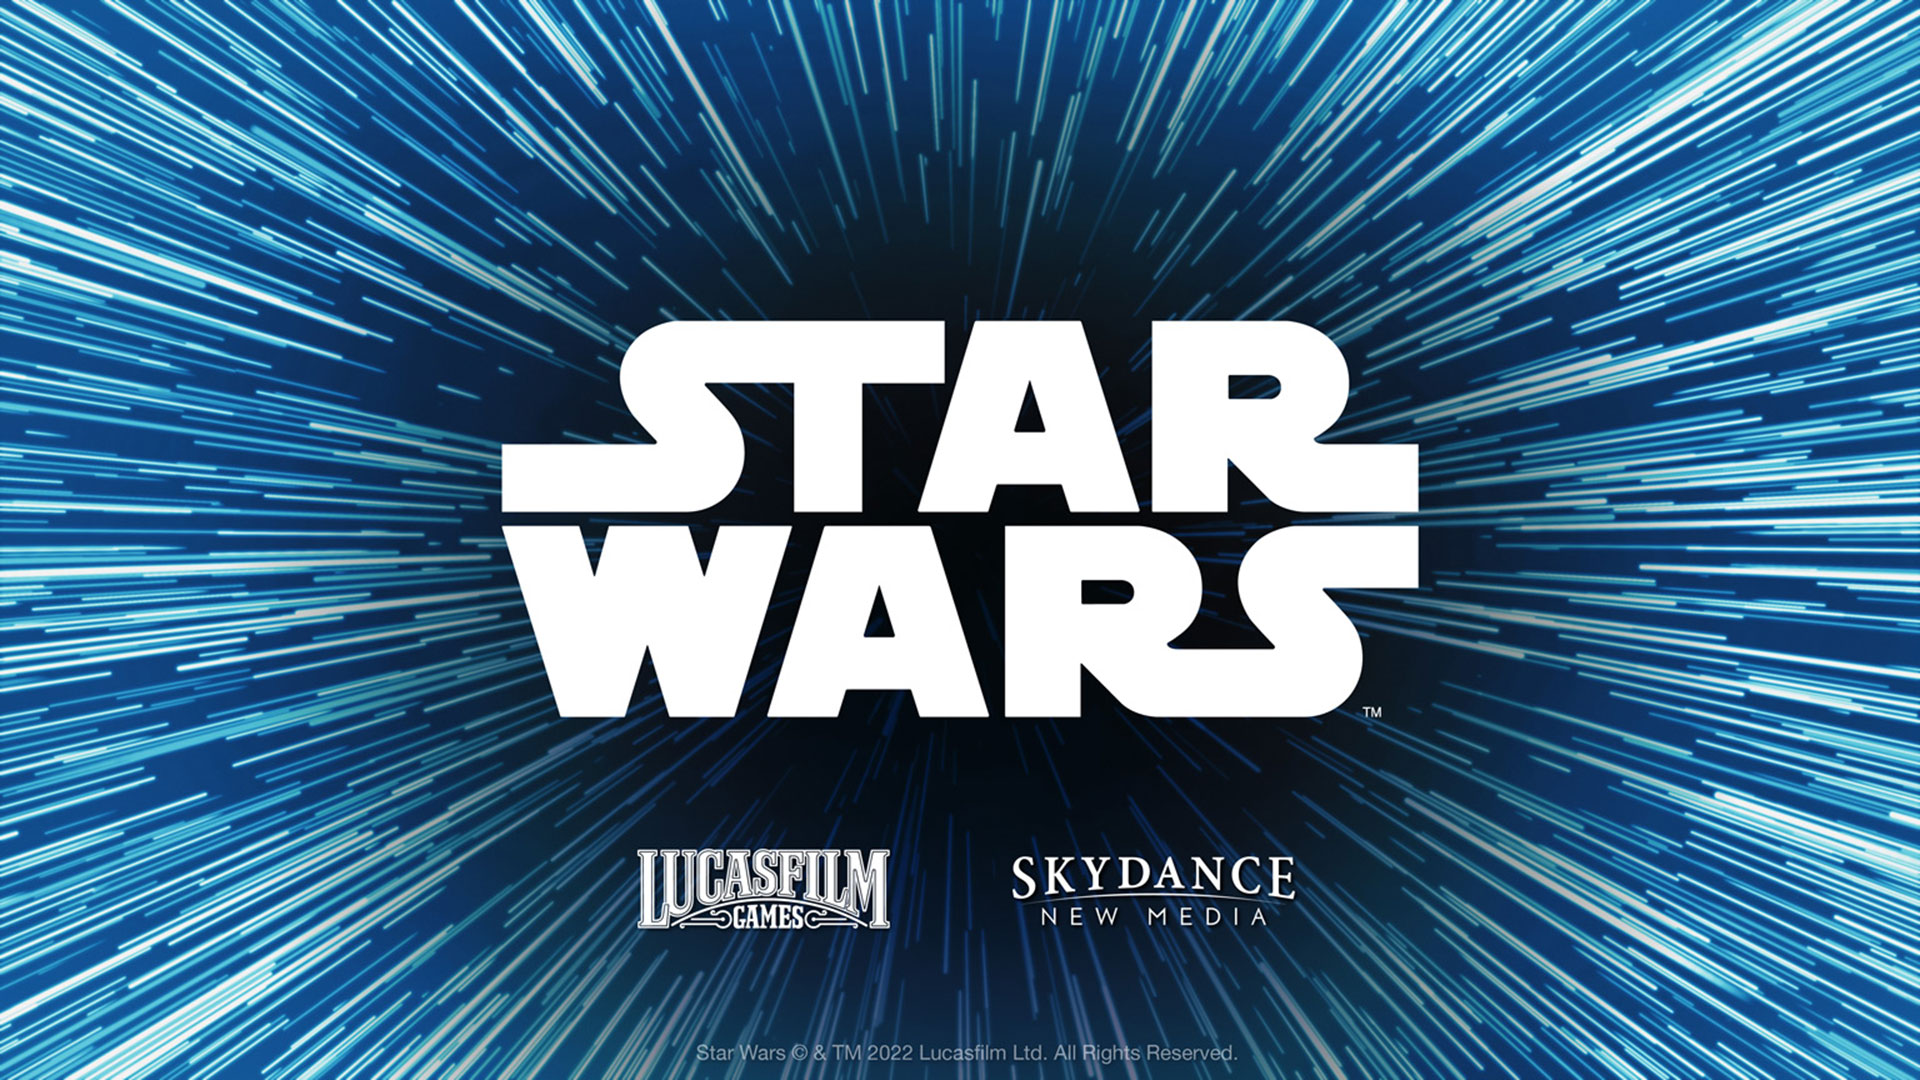 La última semana, Skydance New Media anunció un nuevo juego de Star Wars 